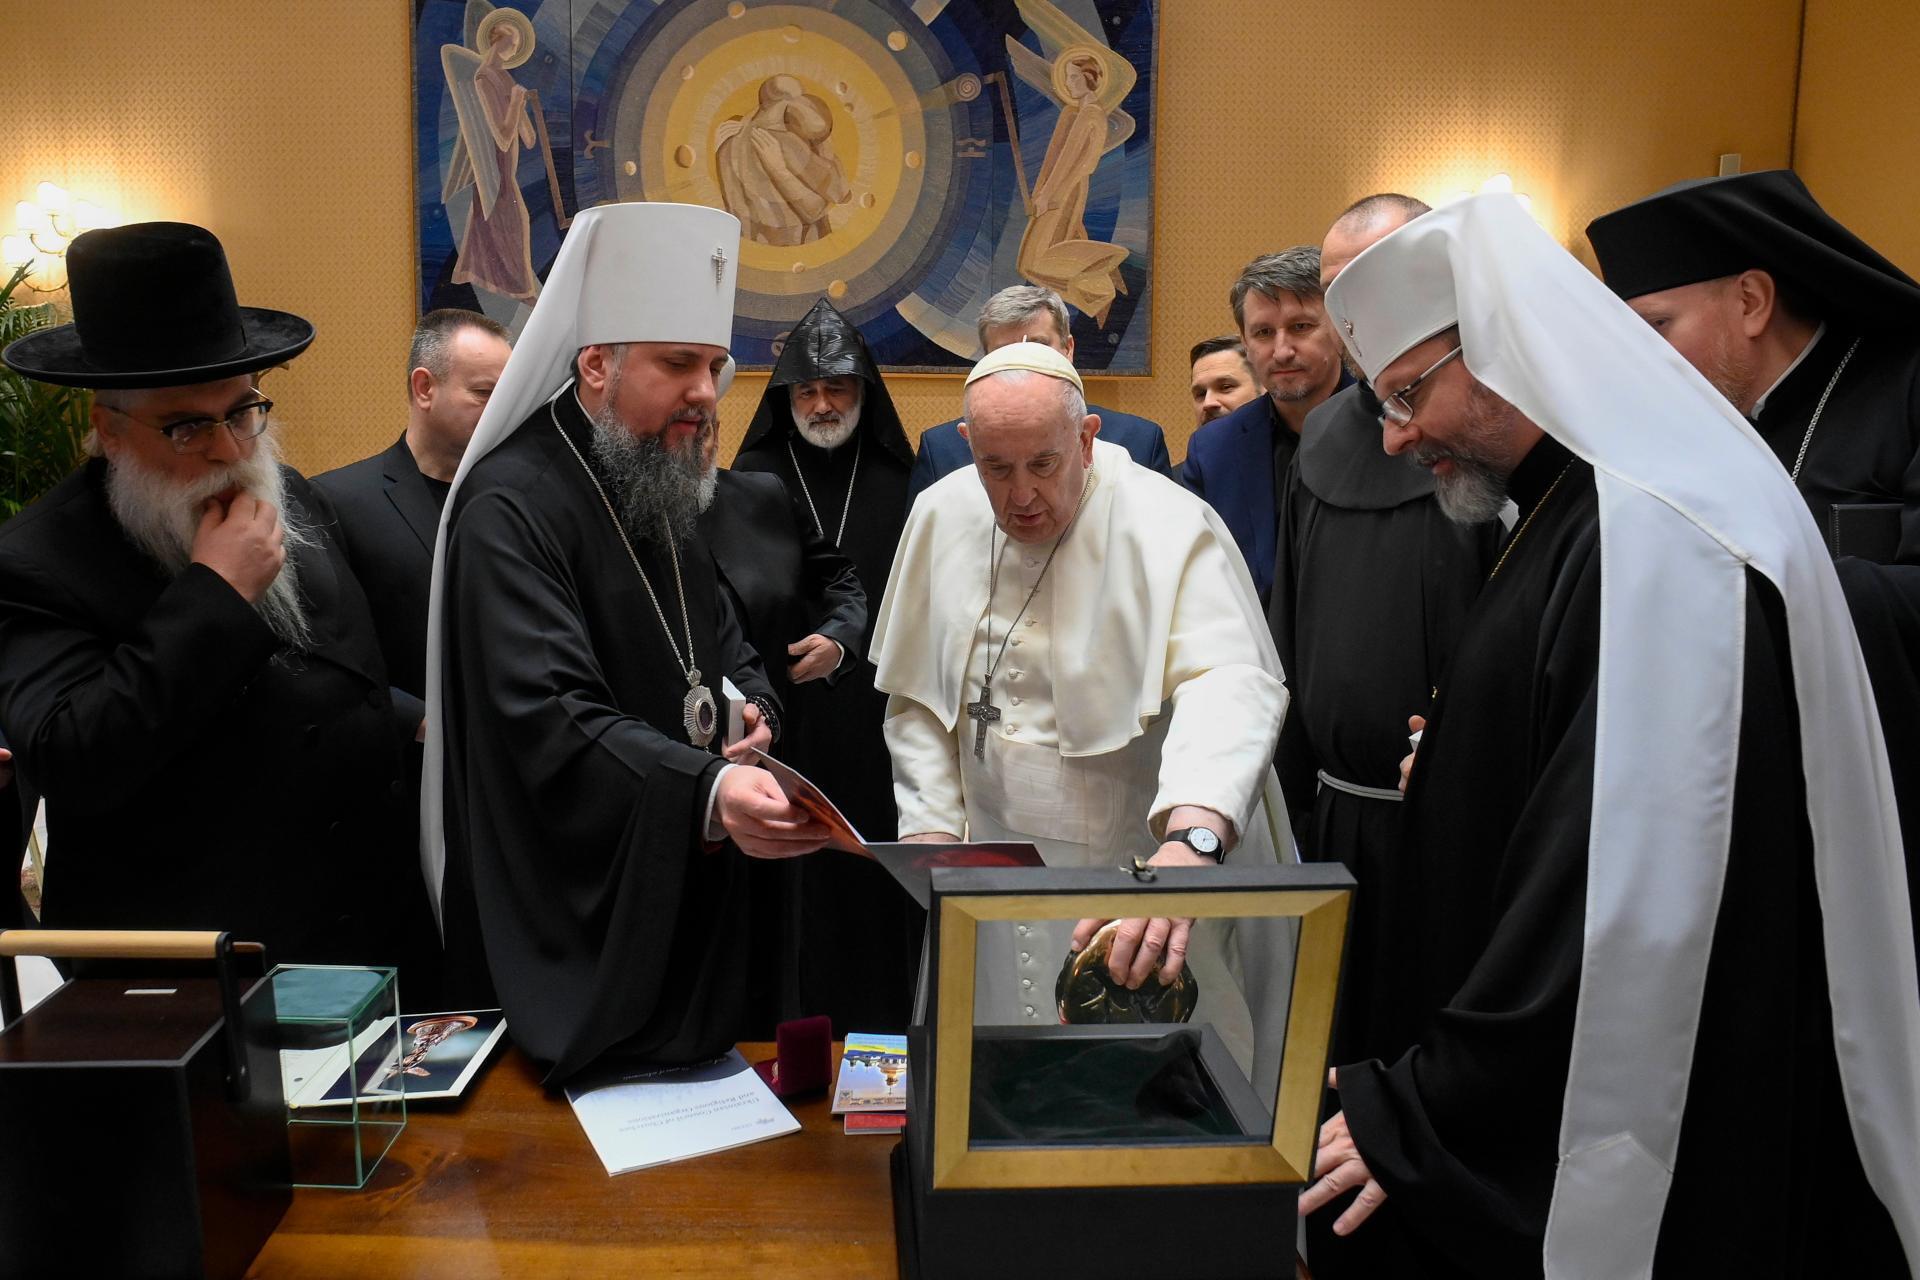 Митрополит Епифаний встретился с Папой Франциском и призвал к совместной молитве о мире 24 февраля. Фото